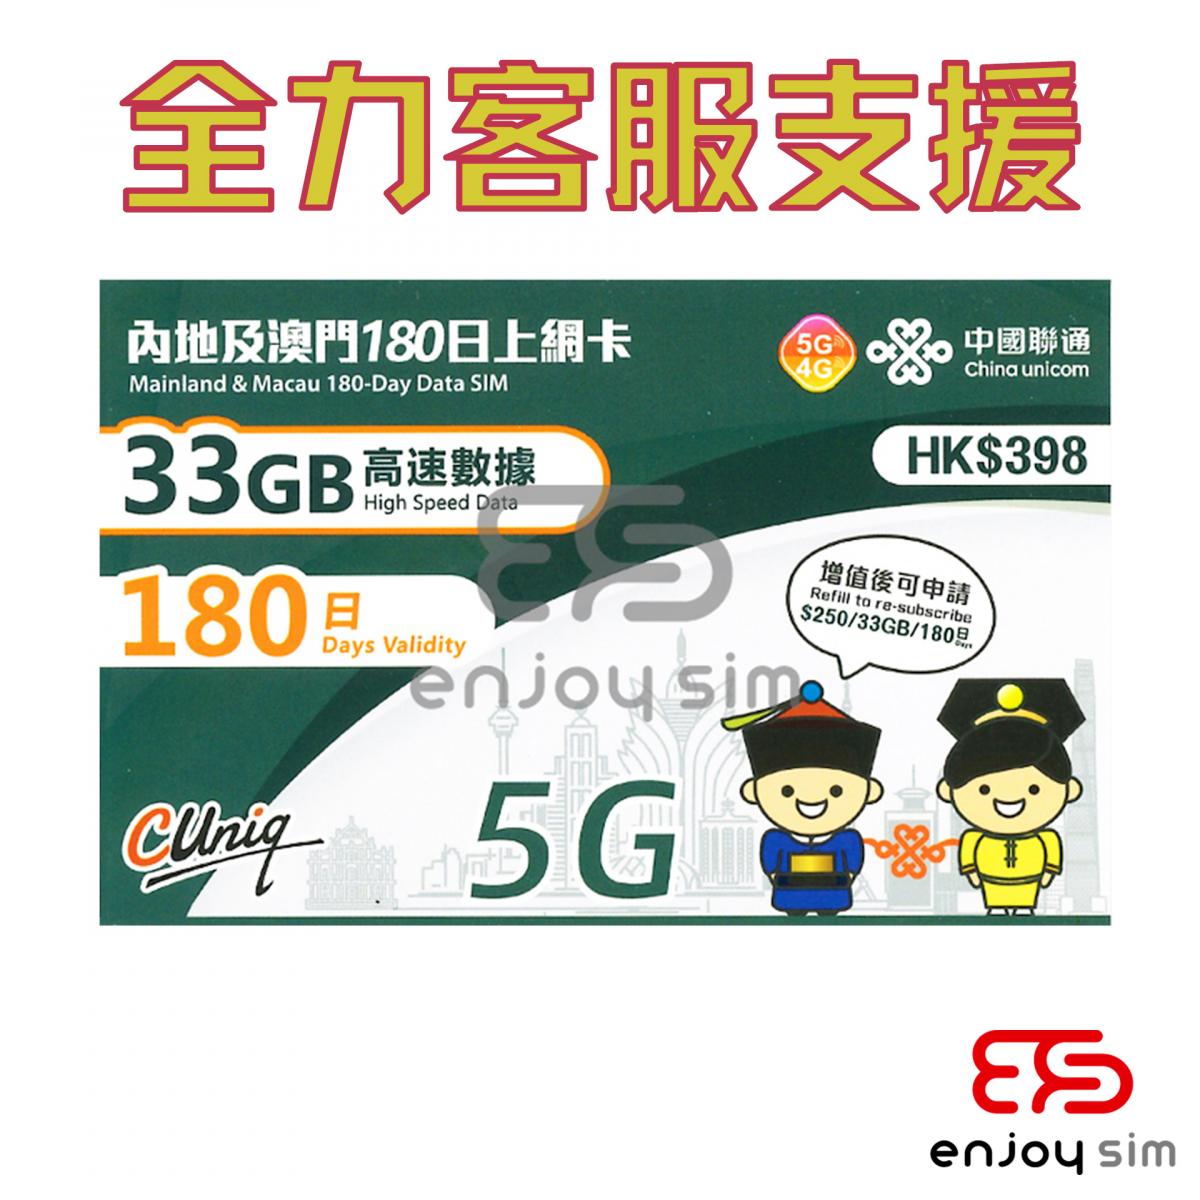 180日【內地、澳門】(33GB) 5G/4G 上網卡數據卡SIM咭